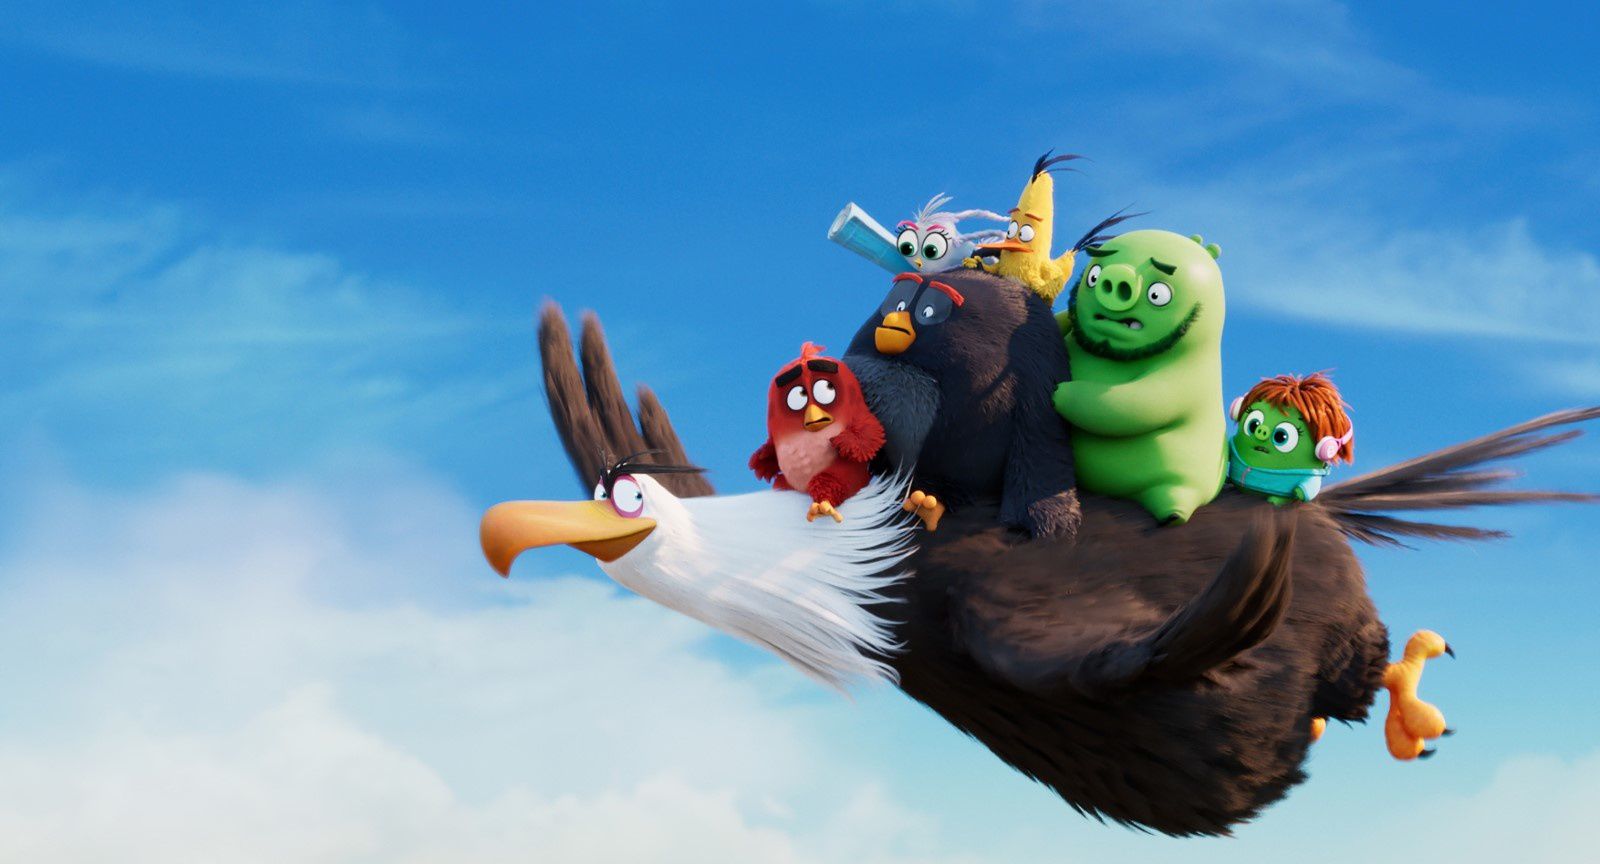 Angry Birds : Copains comme cochons (BANDE-ANNONCE) Le 16 octobre 2019 au cinéma 